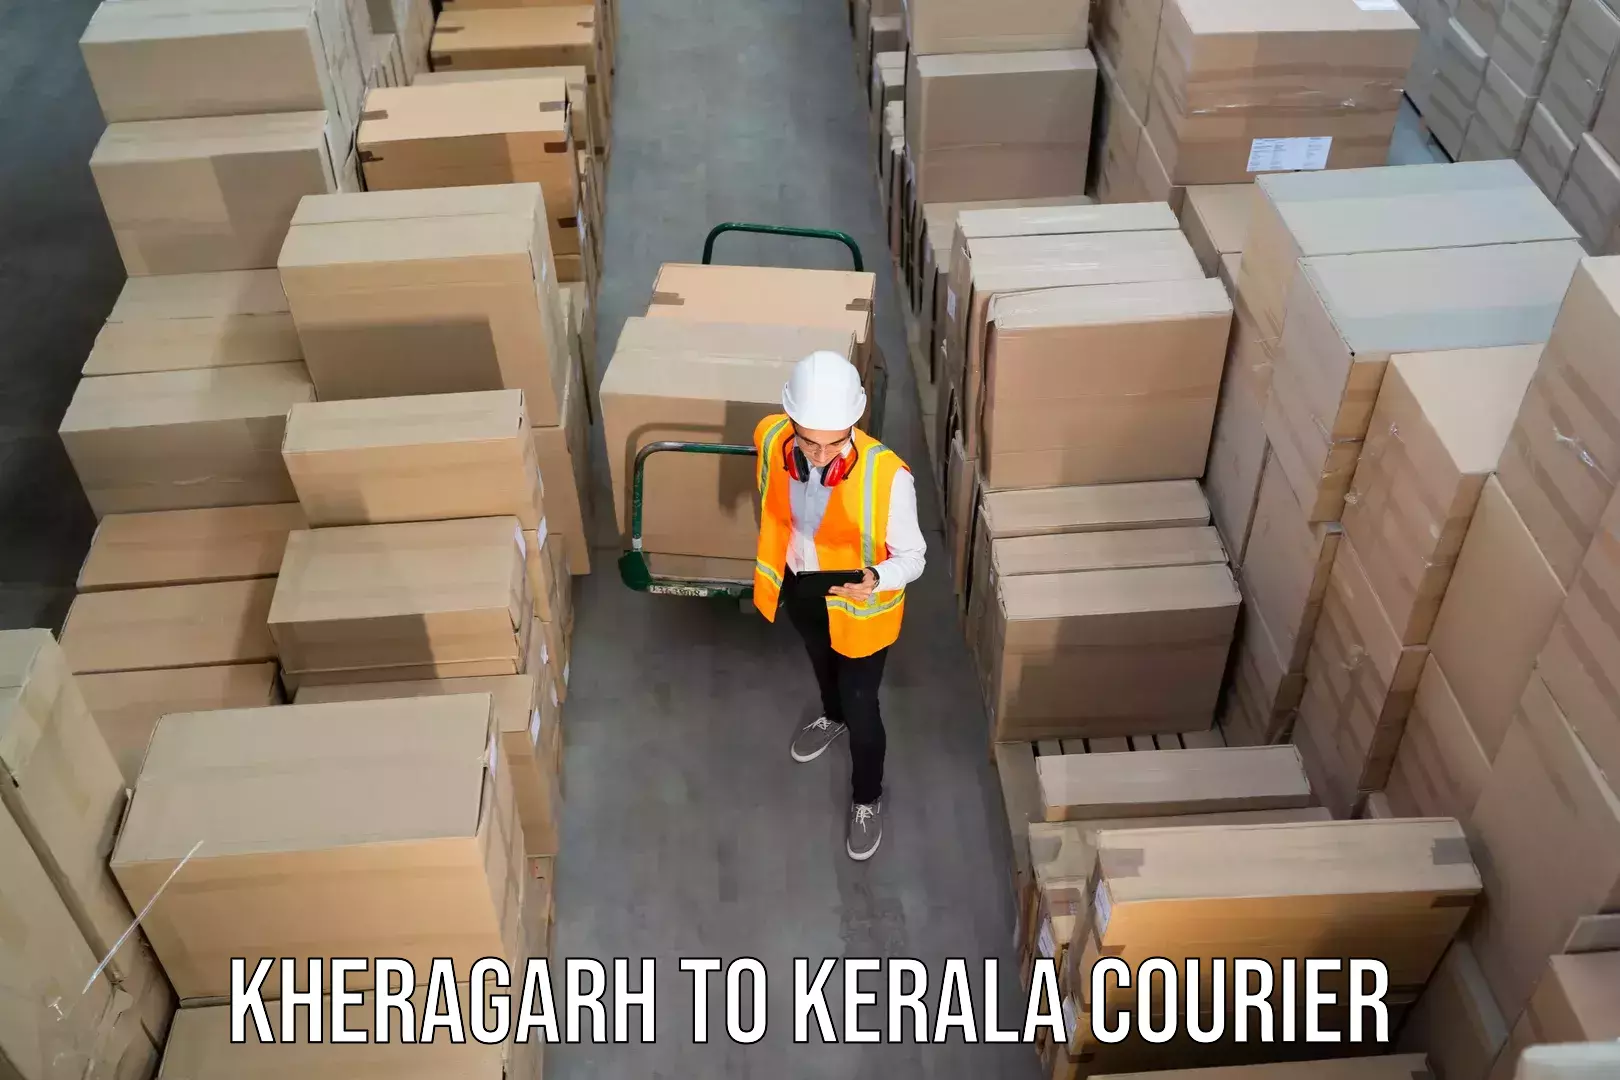 Customizable shipping options Kheragarh to Hosdurg